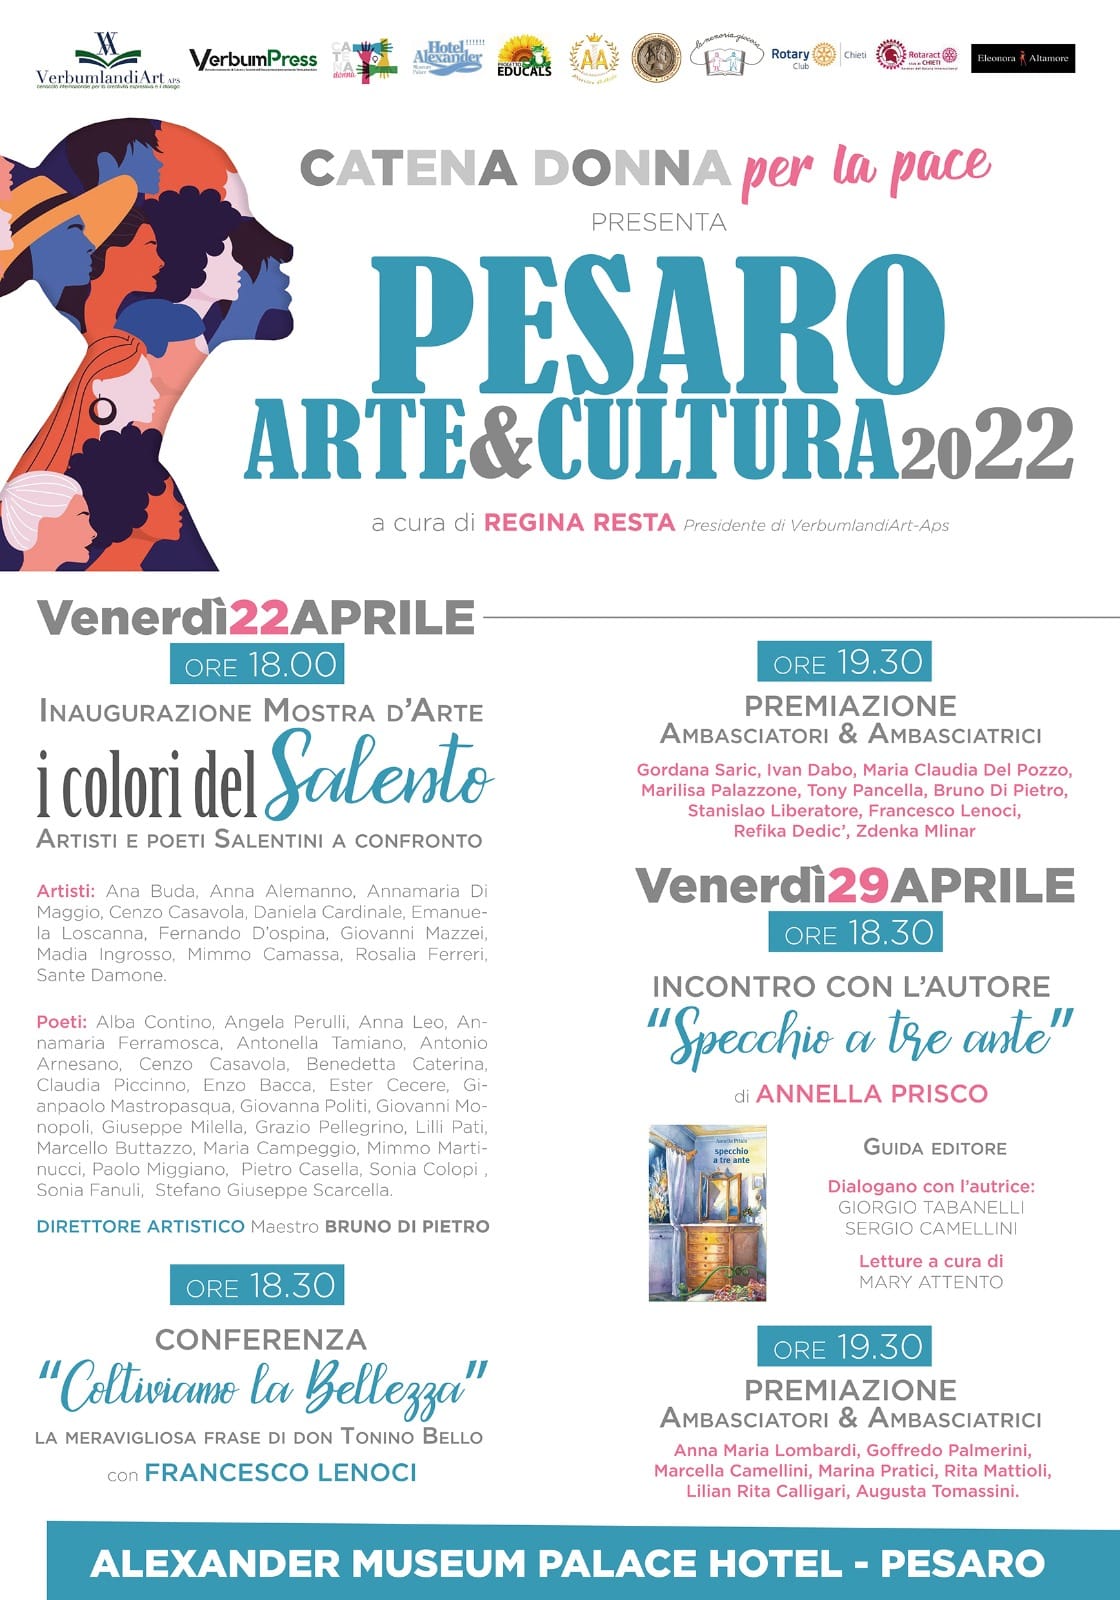 Pesaro arte&cultura 2022